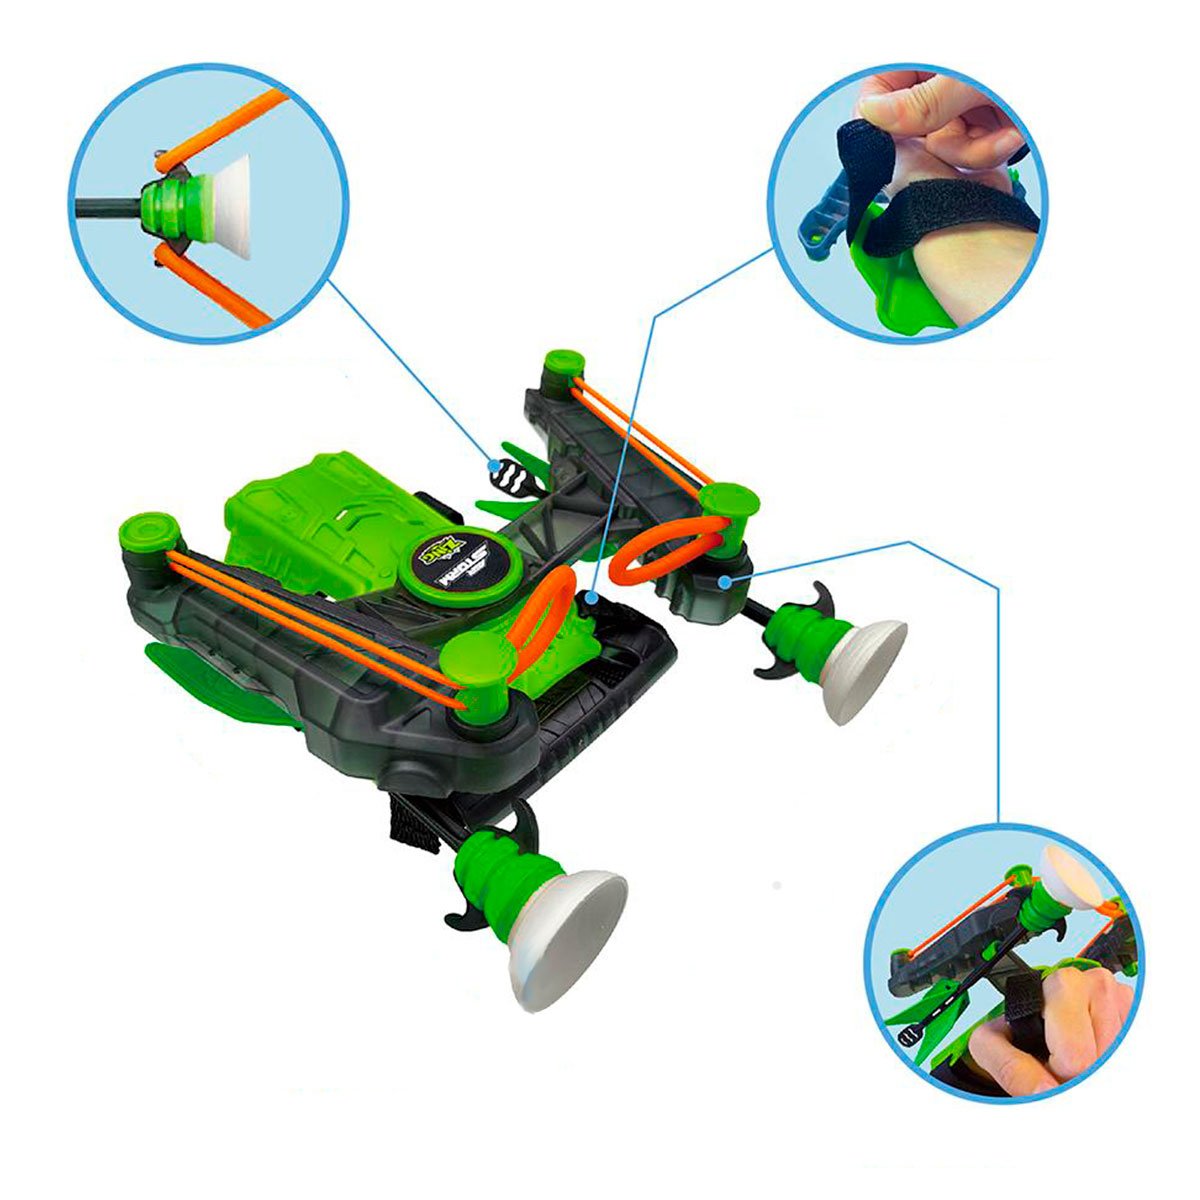 Іграшковий лук на зап'ясток Zing Air Storm Wrist Bow, зелений (AS140G) - фото 5